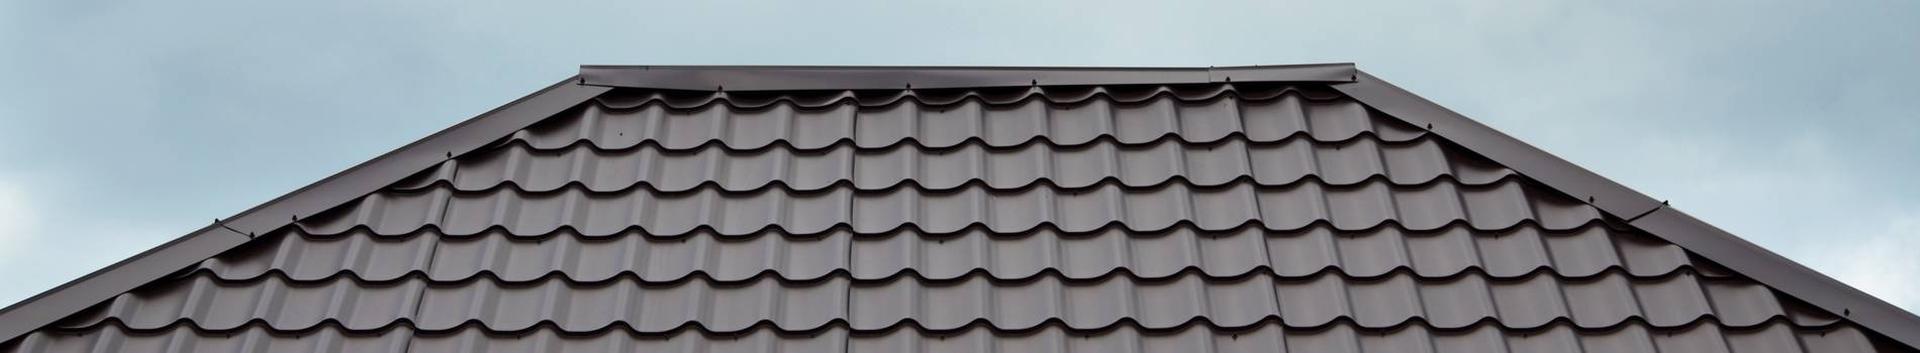 Hea katusekivi kestab sadu aastaid Parima hinnaga katuselahendus ja pikem garantii täislahendusele. Võta ühendust Suurim valik katusekiveKivikatuse parim valik betoonist ja savist katusekive ning lisatarvikuid. Katusekivile garantii 30 aastatKivikatus tõstab maja väärtust ja kestab kauem kui ükski teine katusematerjal. Partner-EhitajaEsindame tuntud katusematerjali tootjate Monier ja Benders kivikatuse paigaldust Parim hindMeie teenused ja tooted on parima